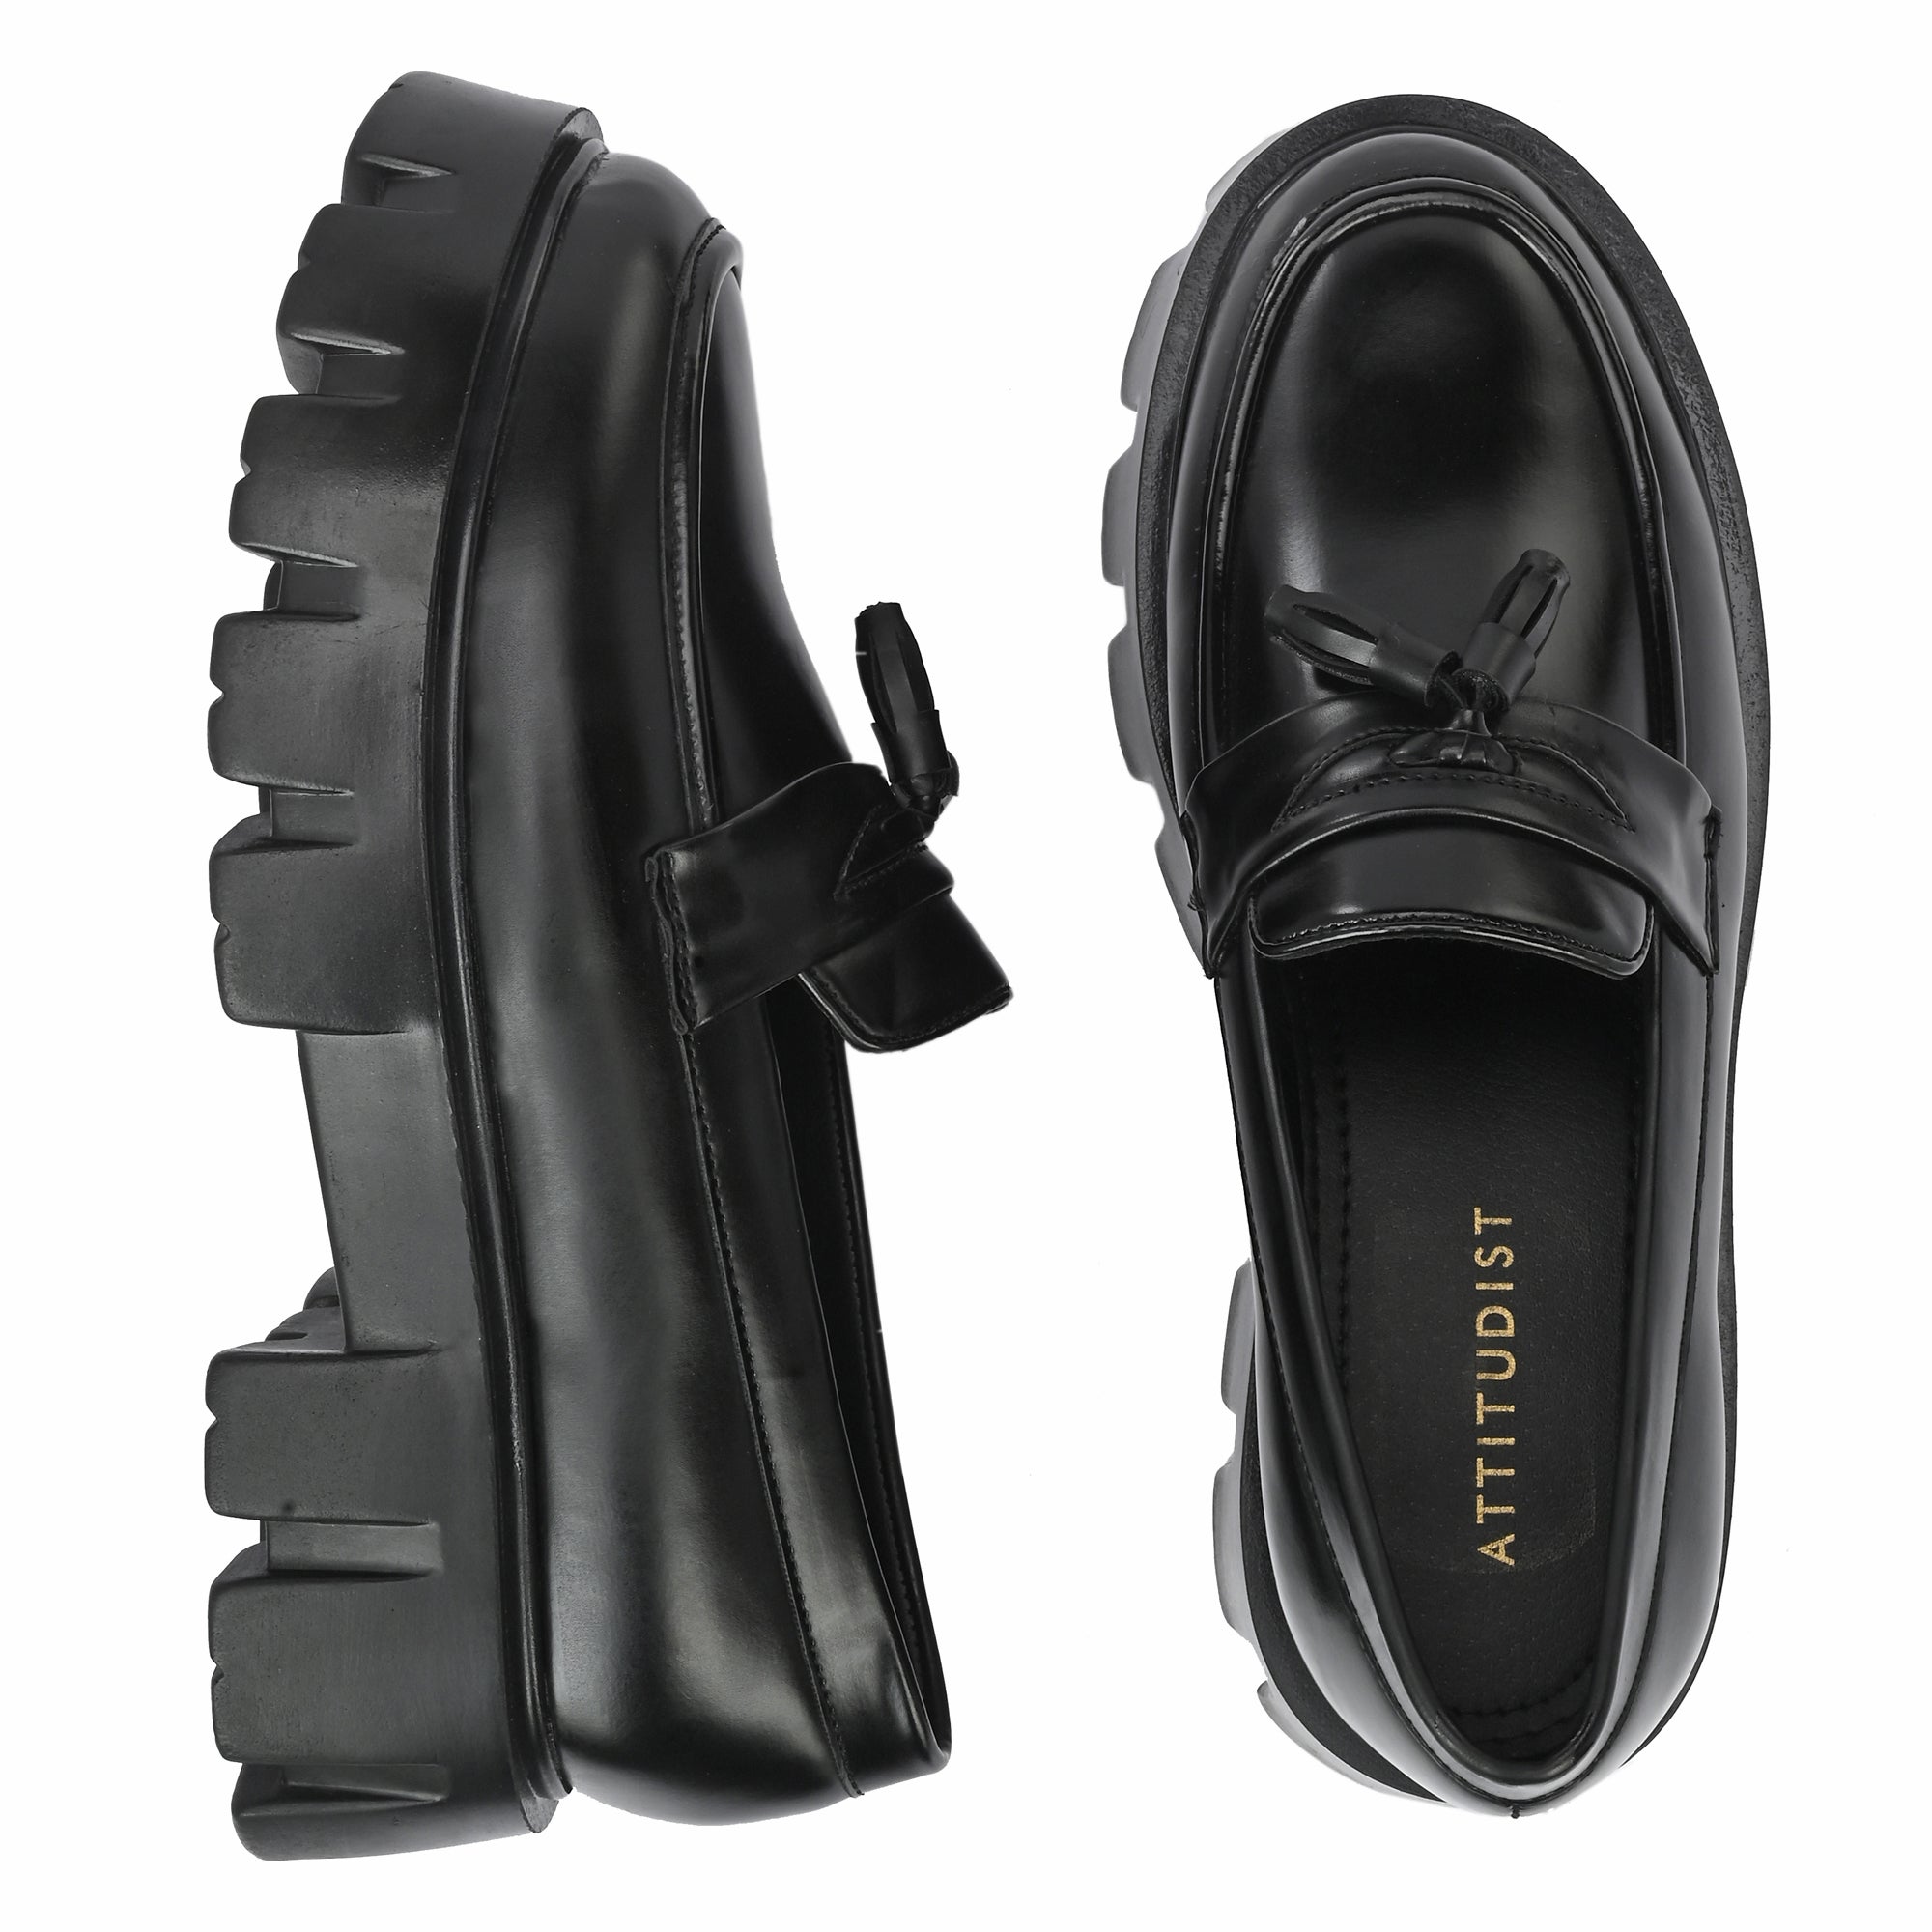 attitudist-glossy-black-high-heel-tassel-loafers-for-men